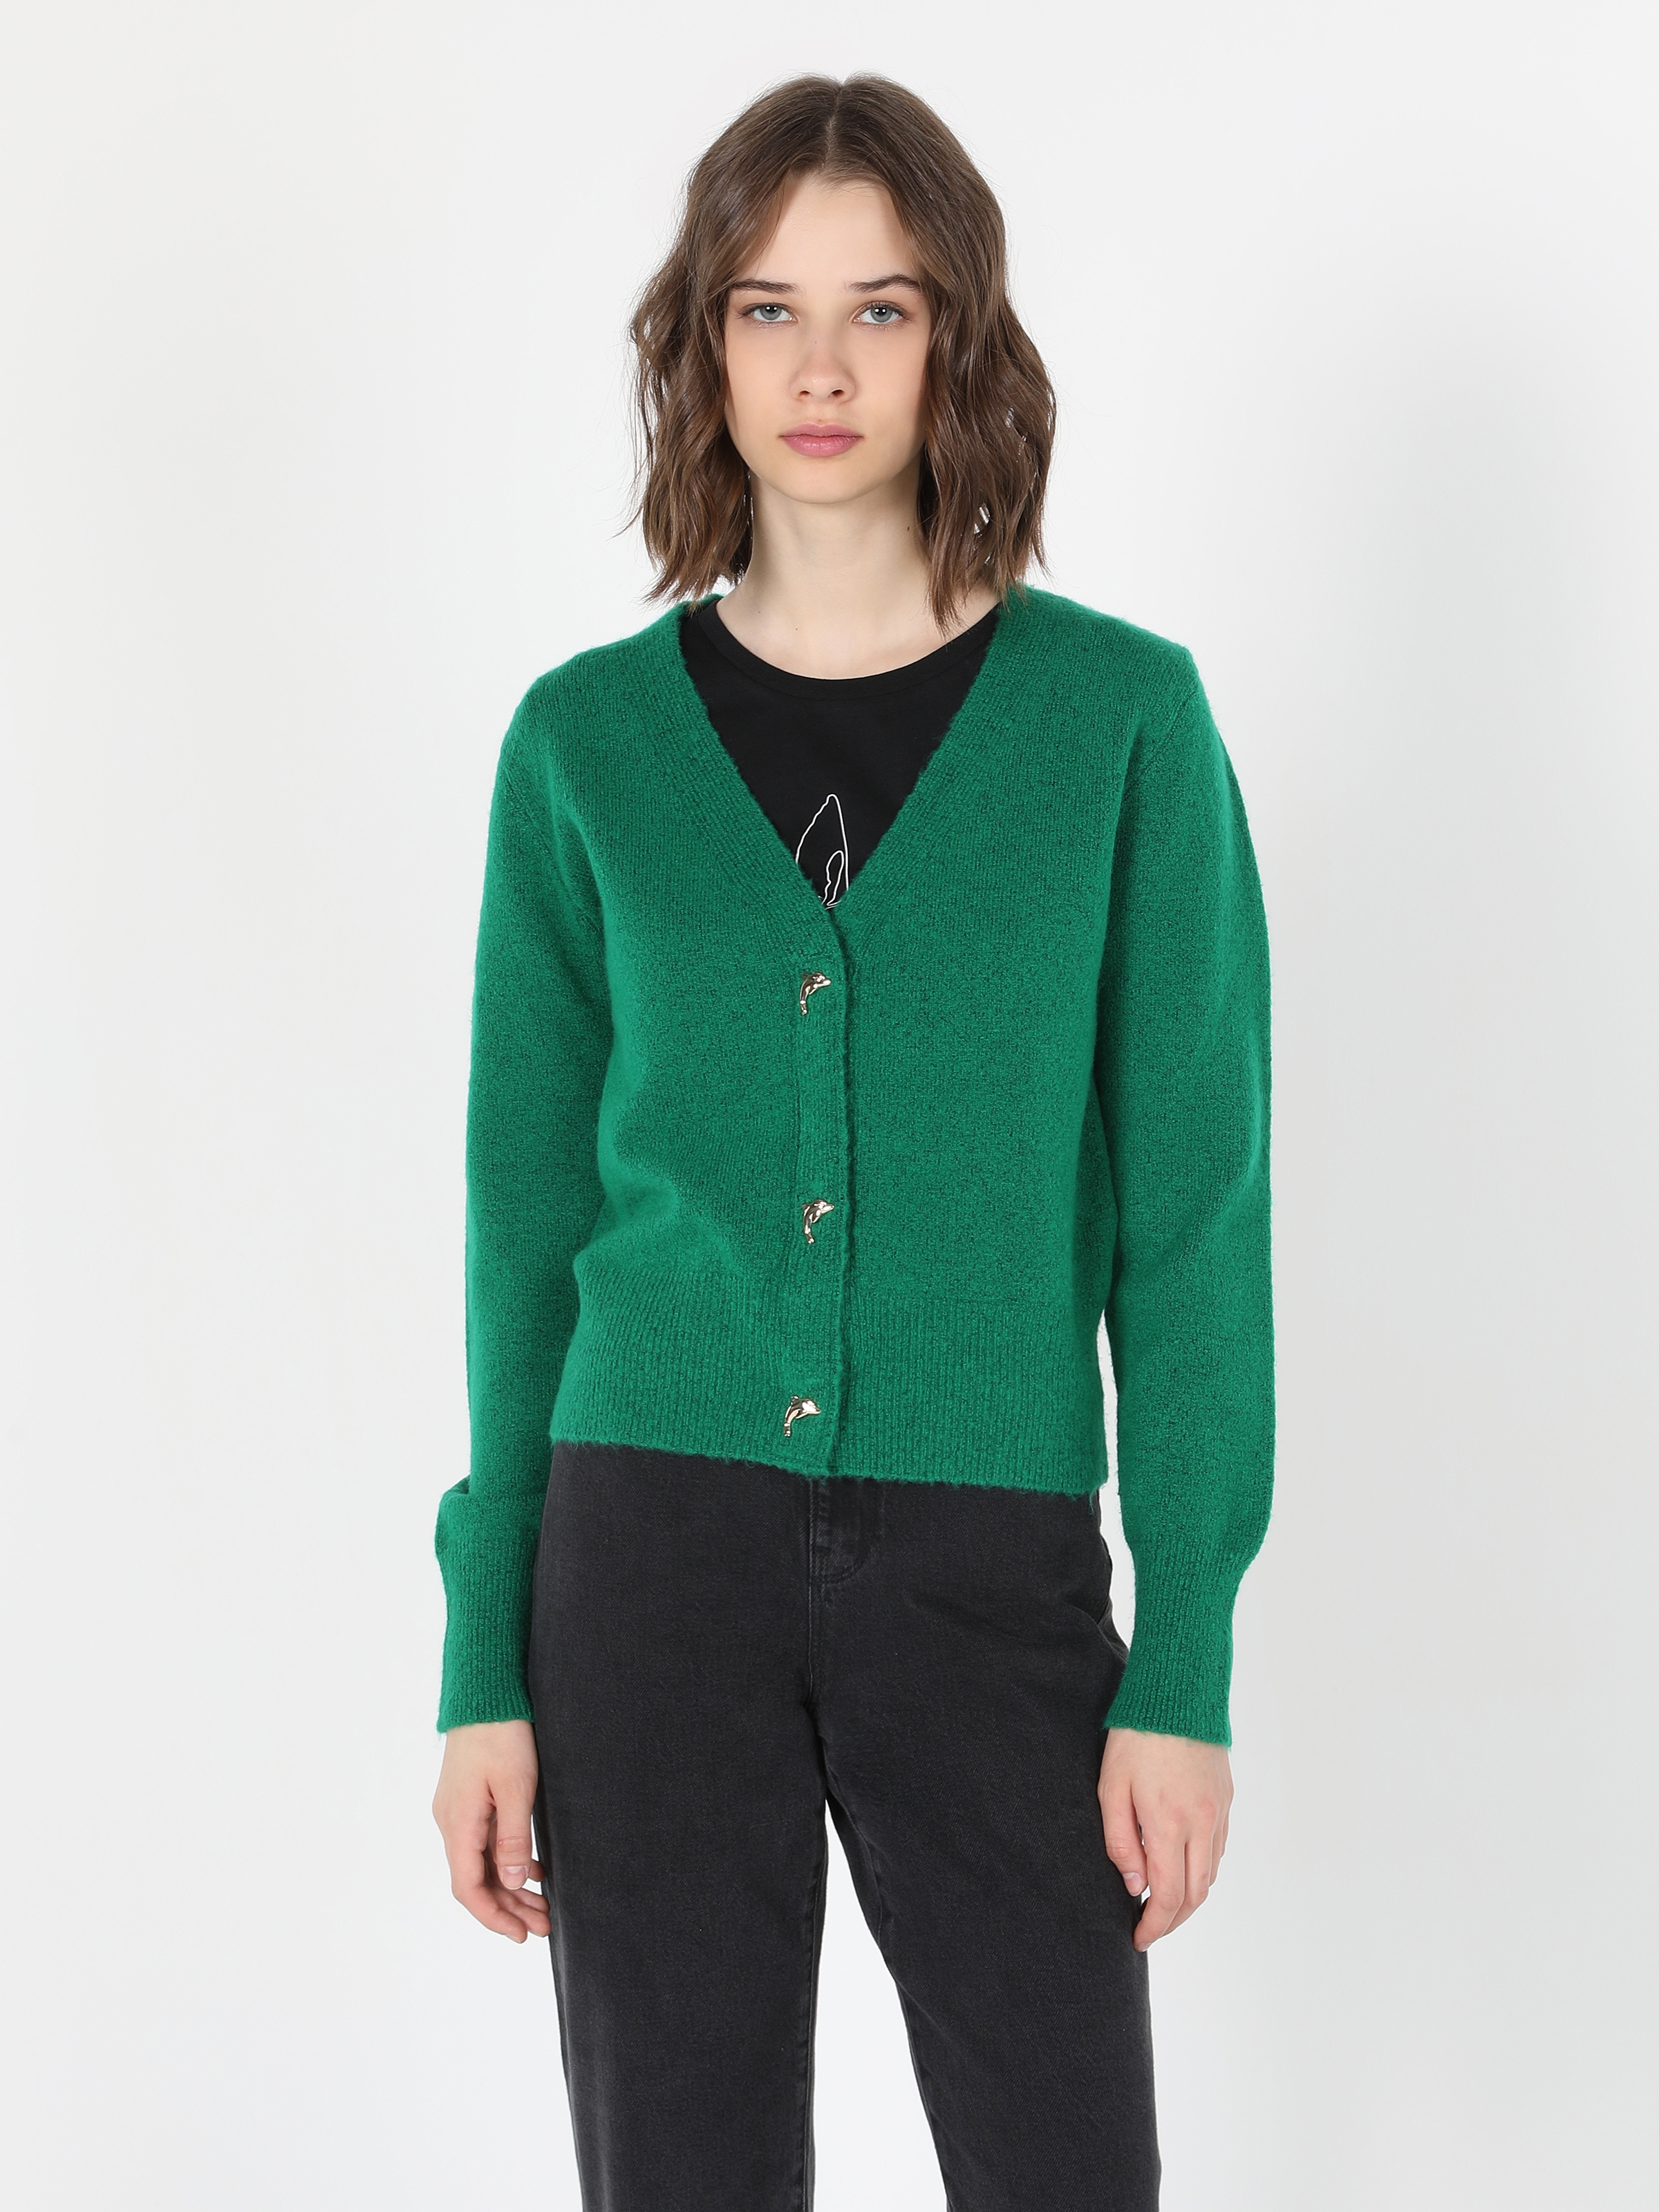 Afficher les détails de Cardigan Femme Vert En Tricot Coupe Régulière